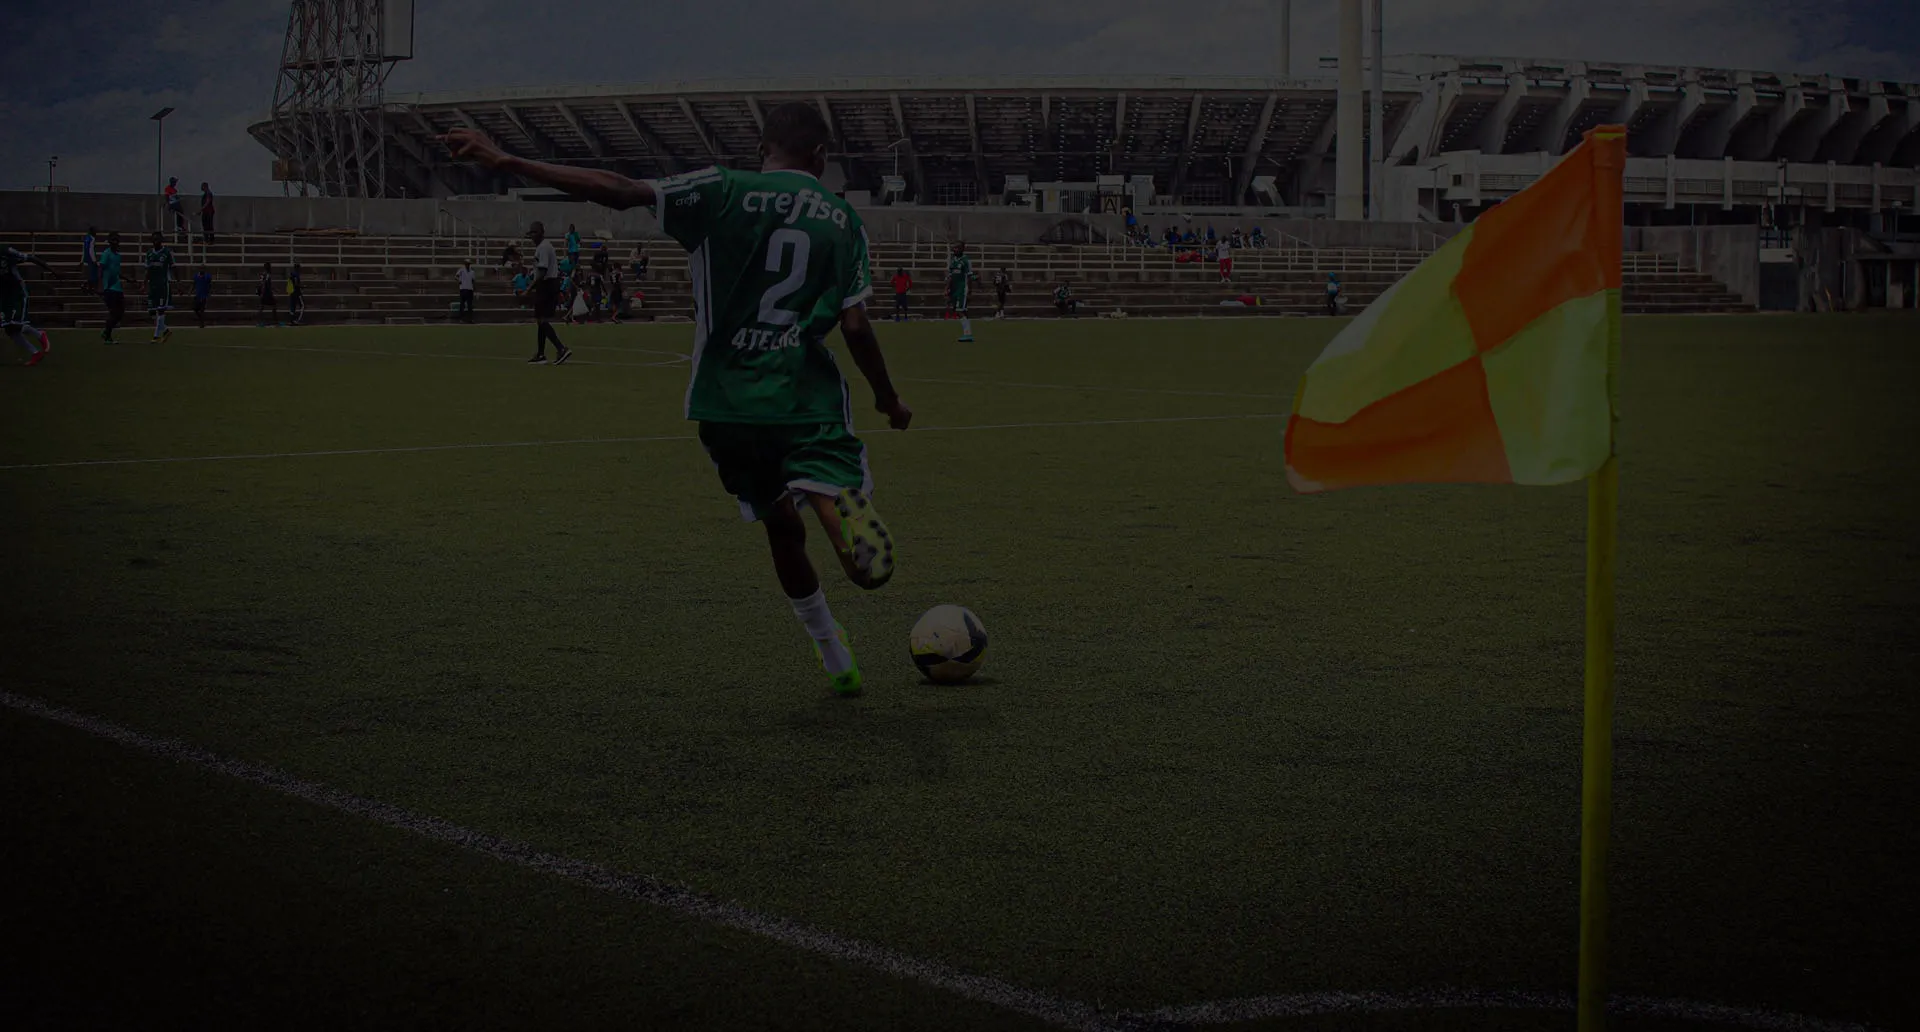 KAA Gent signs Nigerian youngster Umar Abubakar